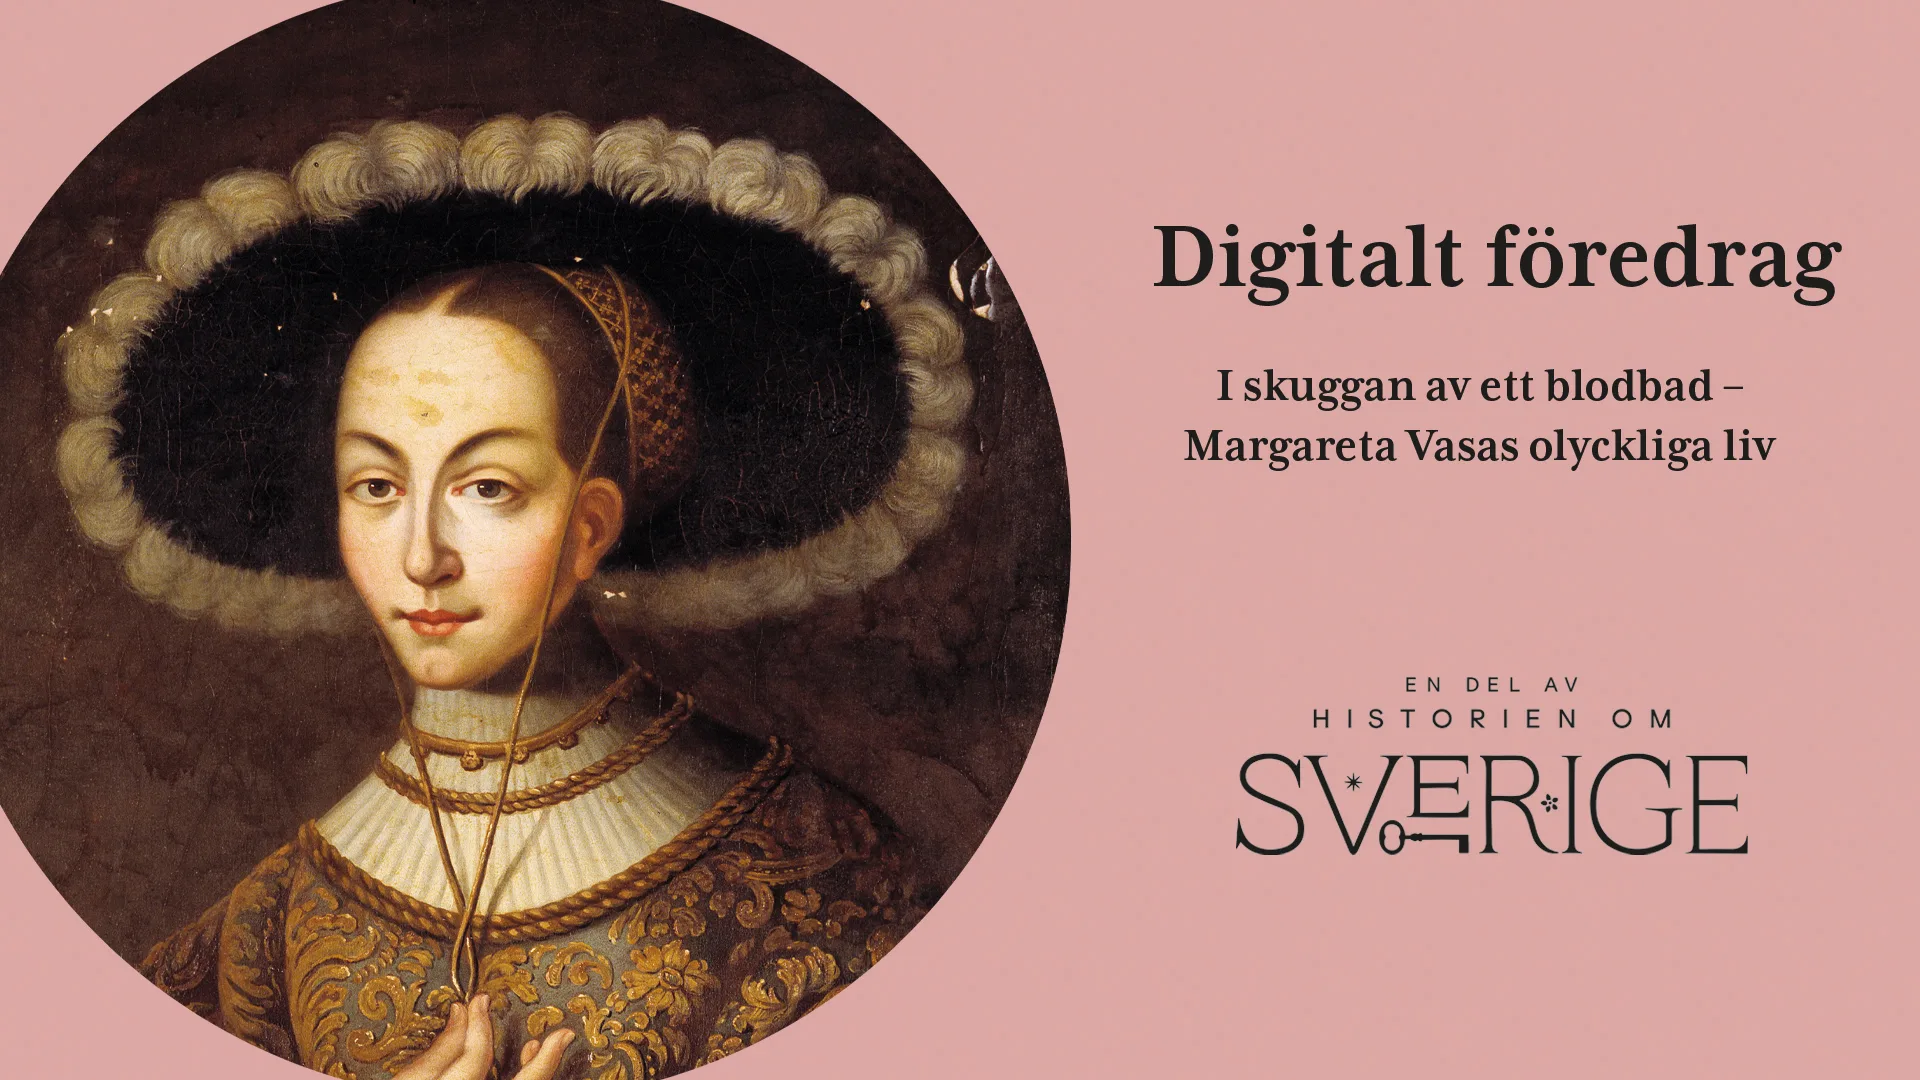 Porträtt på Margareta Vasa med texten "Digitalt föredrag, I skuggan av ett blad om Margareta Vasas olyckliga liv. Även logotypen En del av Historien om Sverige visas i bilden.